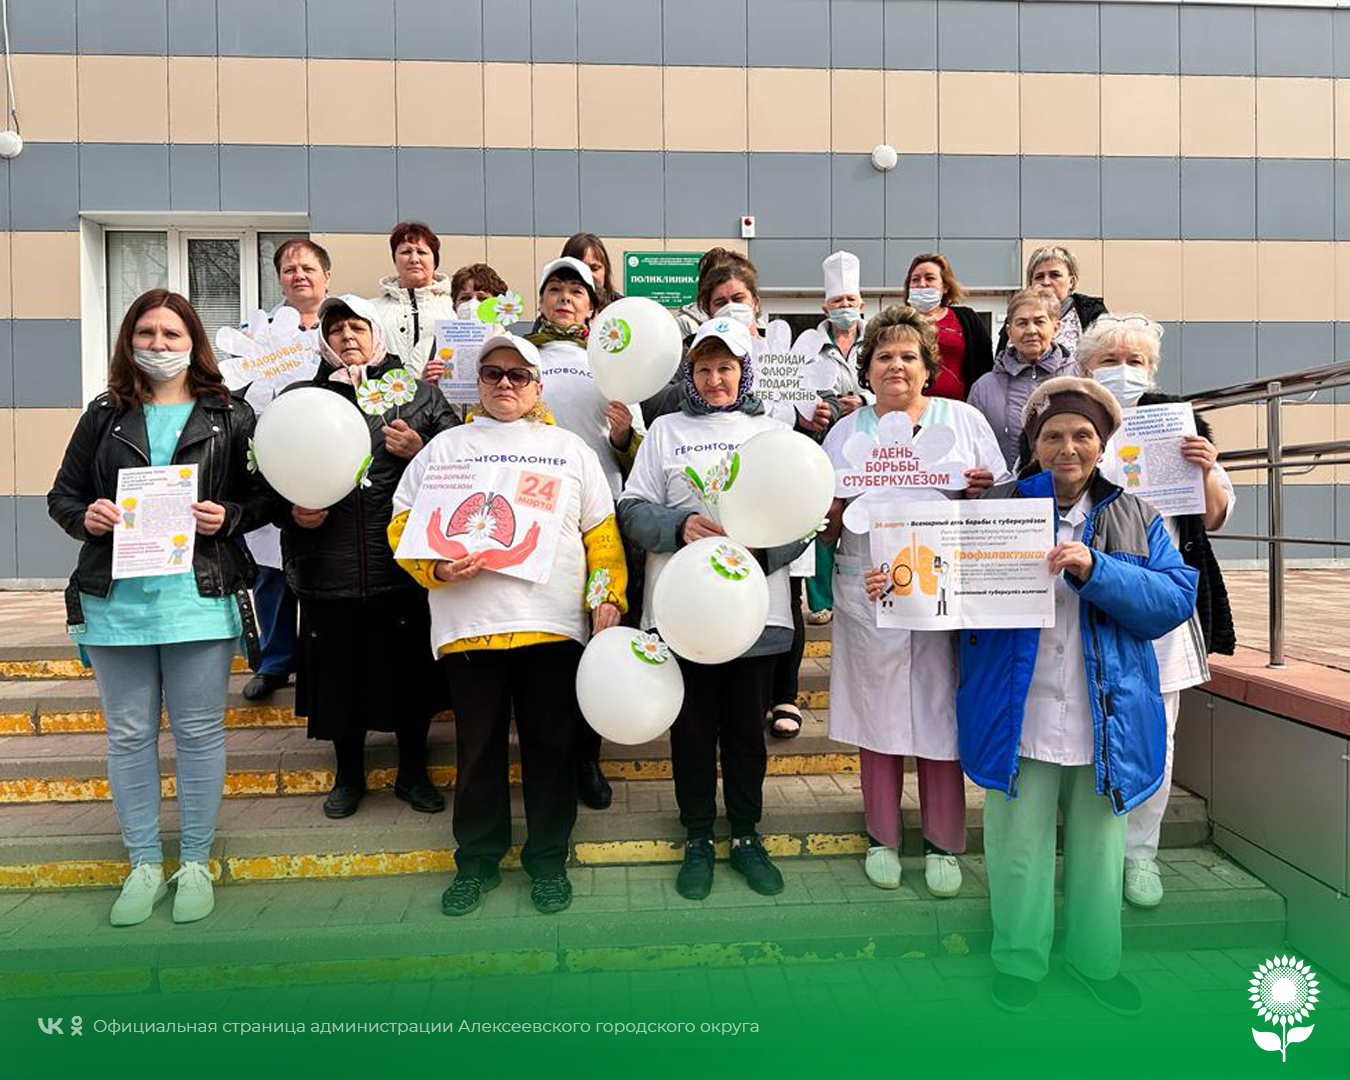 В Алексеевском городском округе прошла акция «День здоровых и чистых легких»